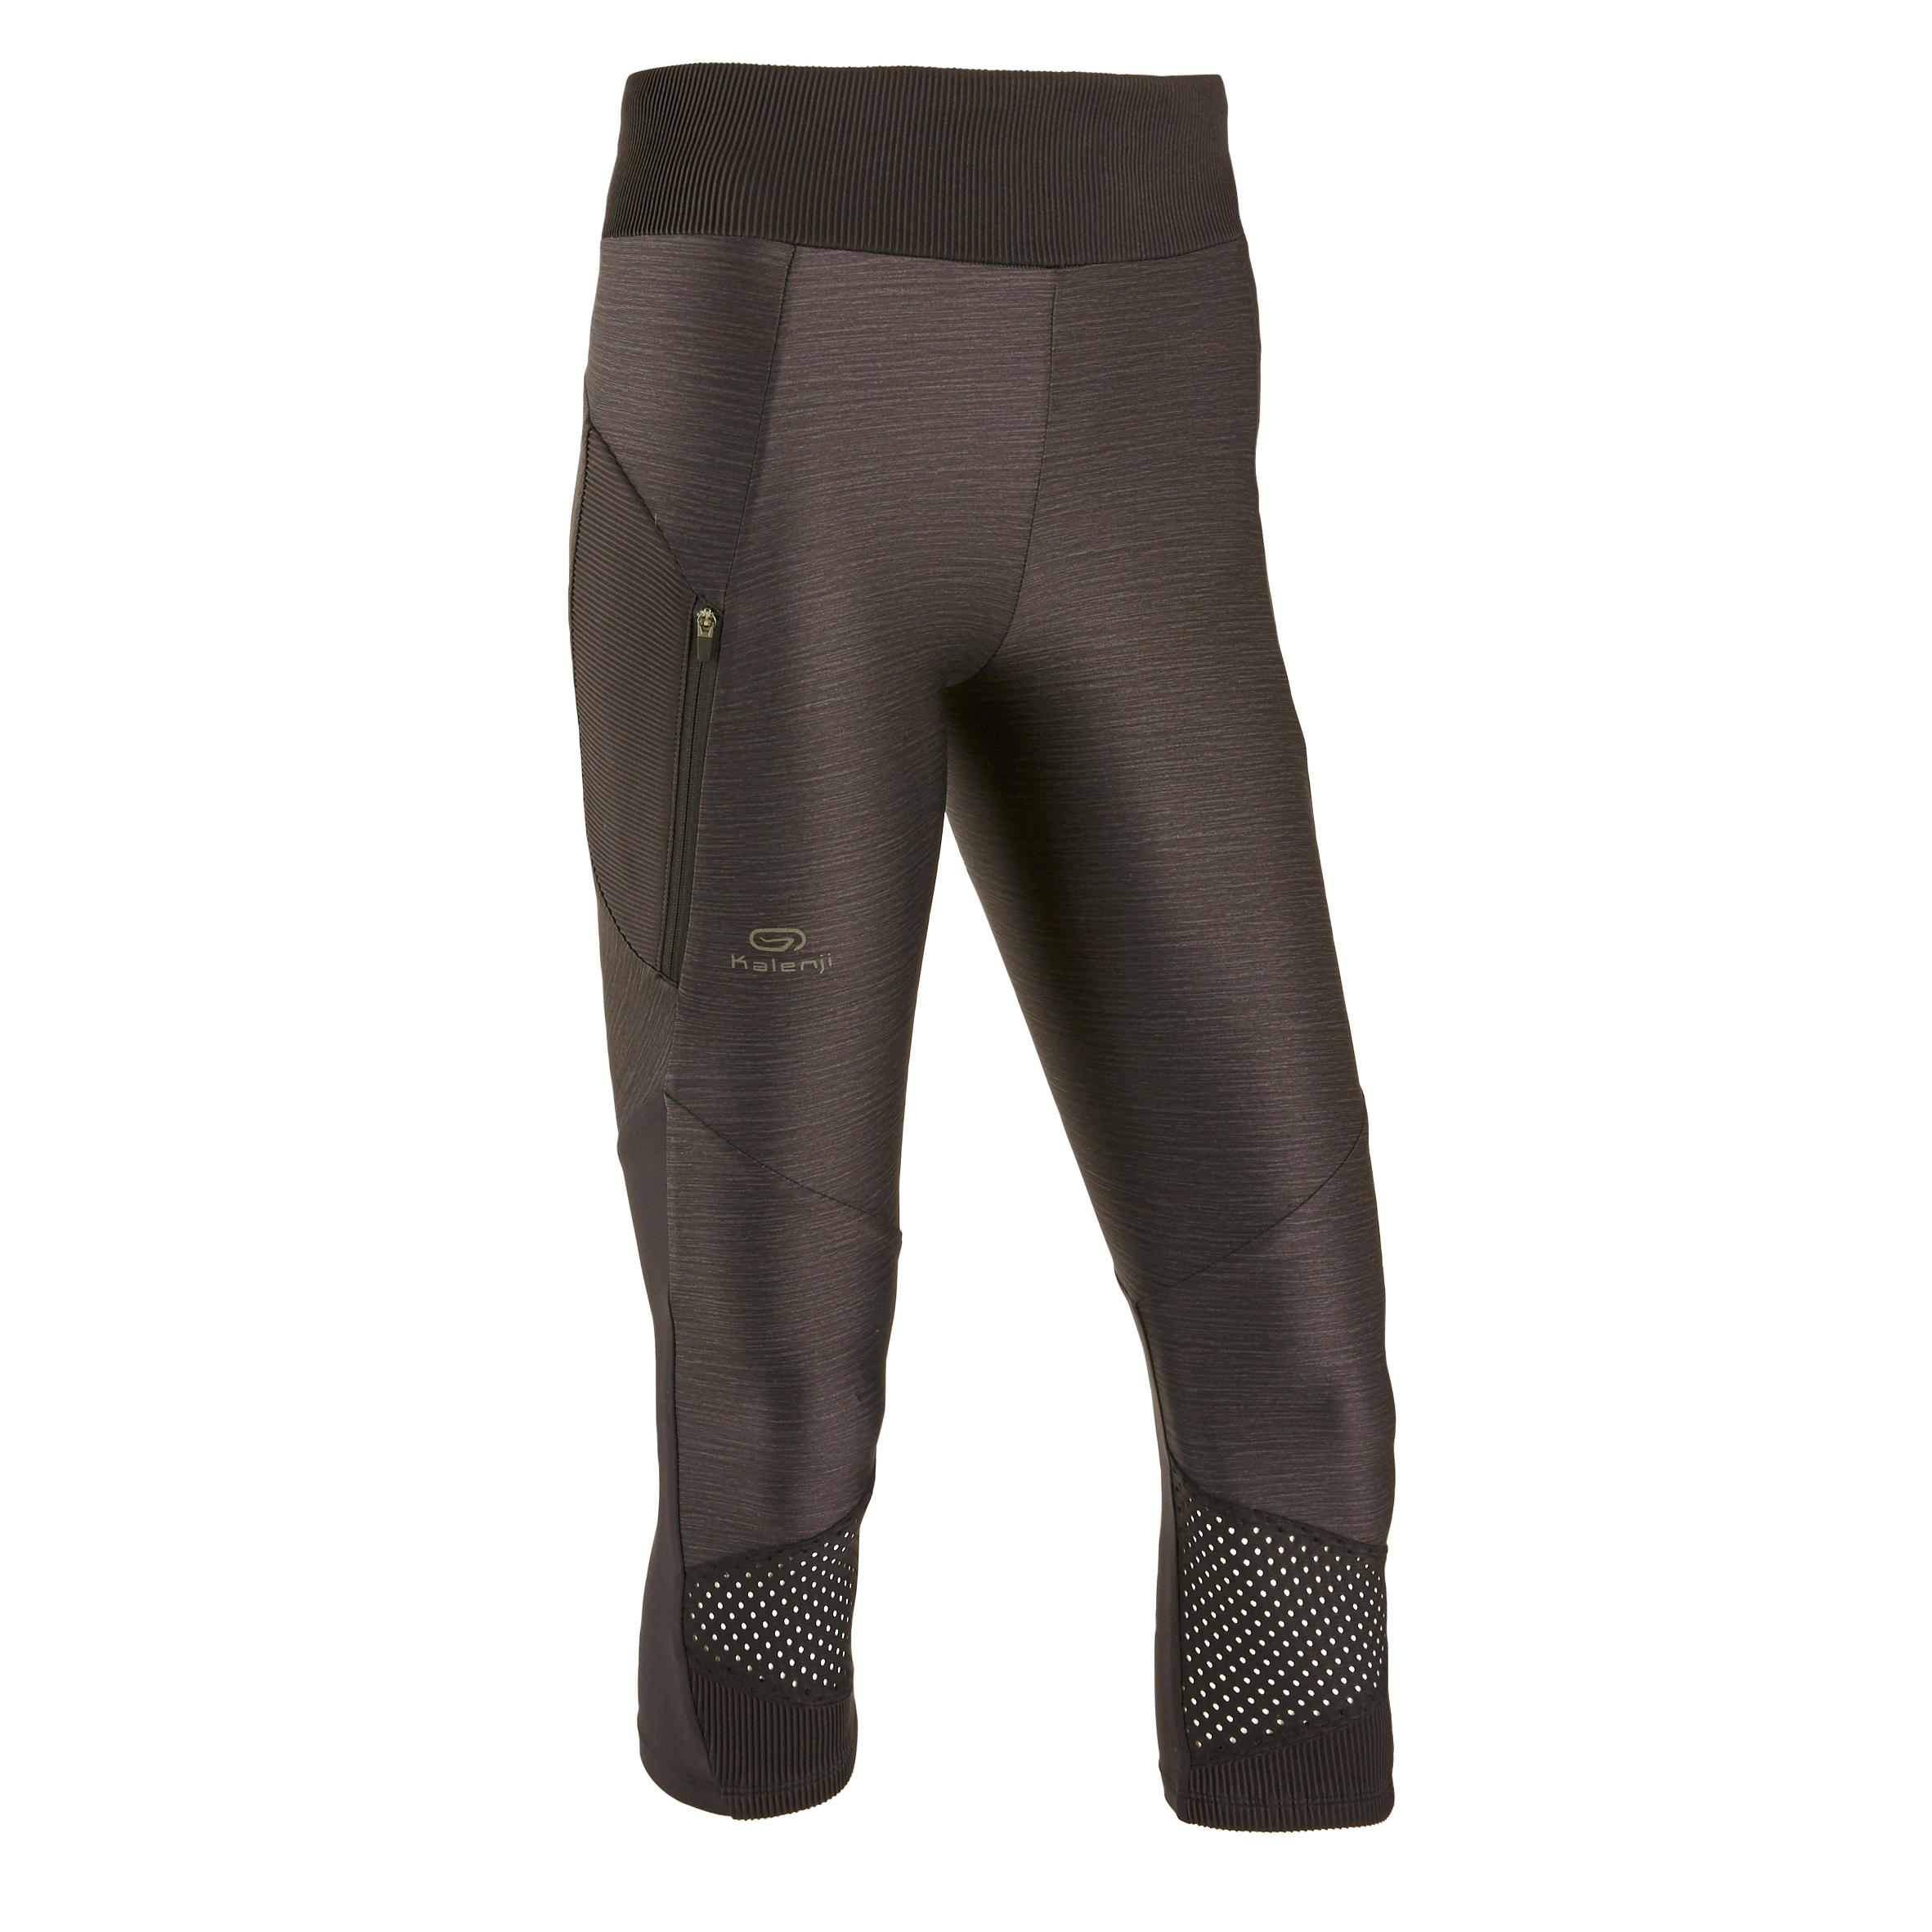 Women's breathable short running leggings Dry+ Feel - black 30/31